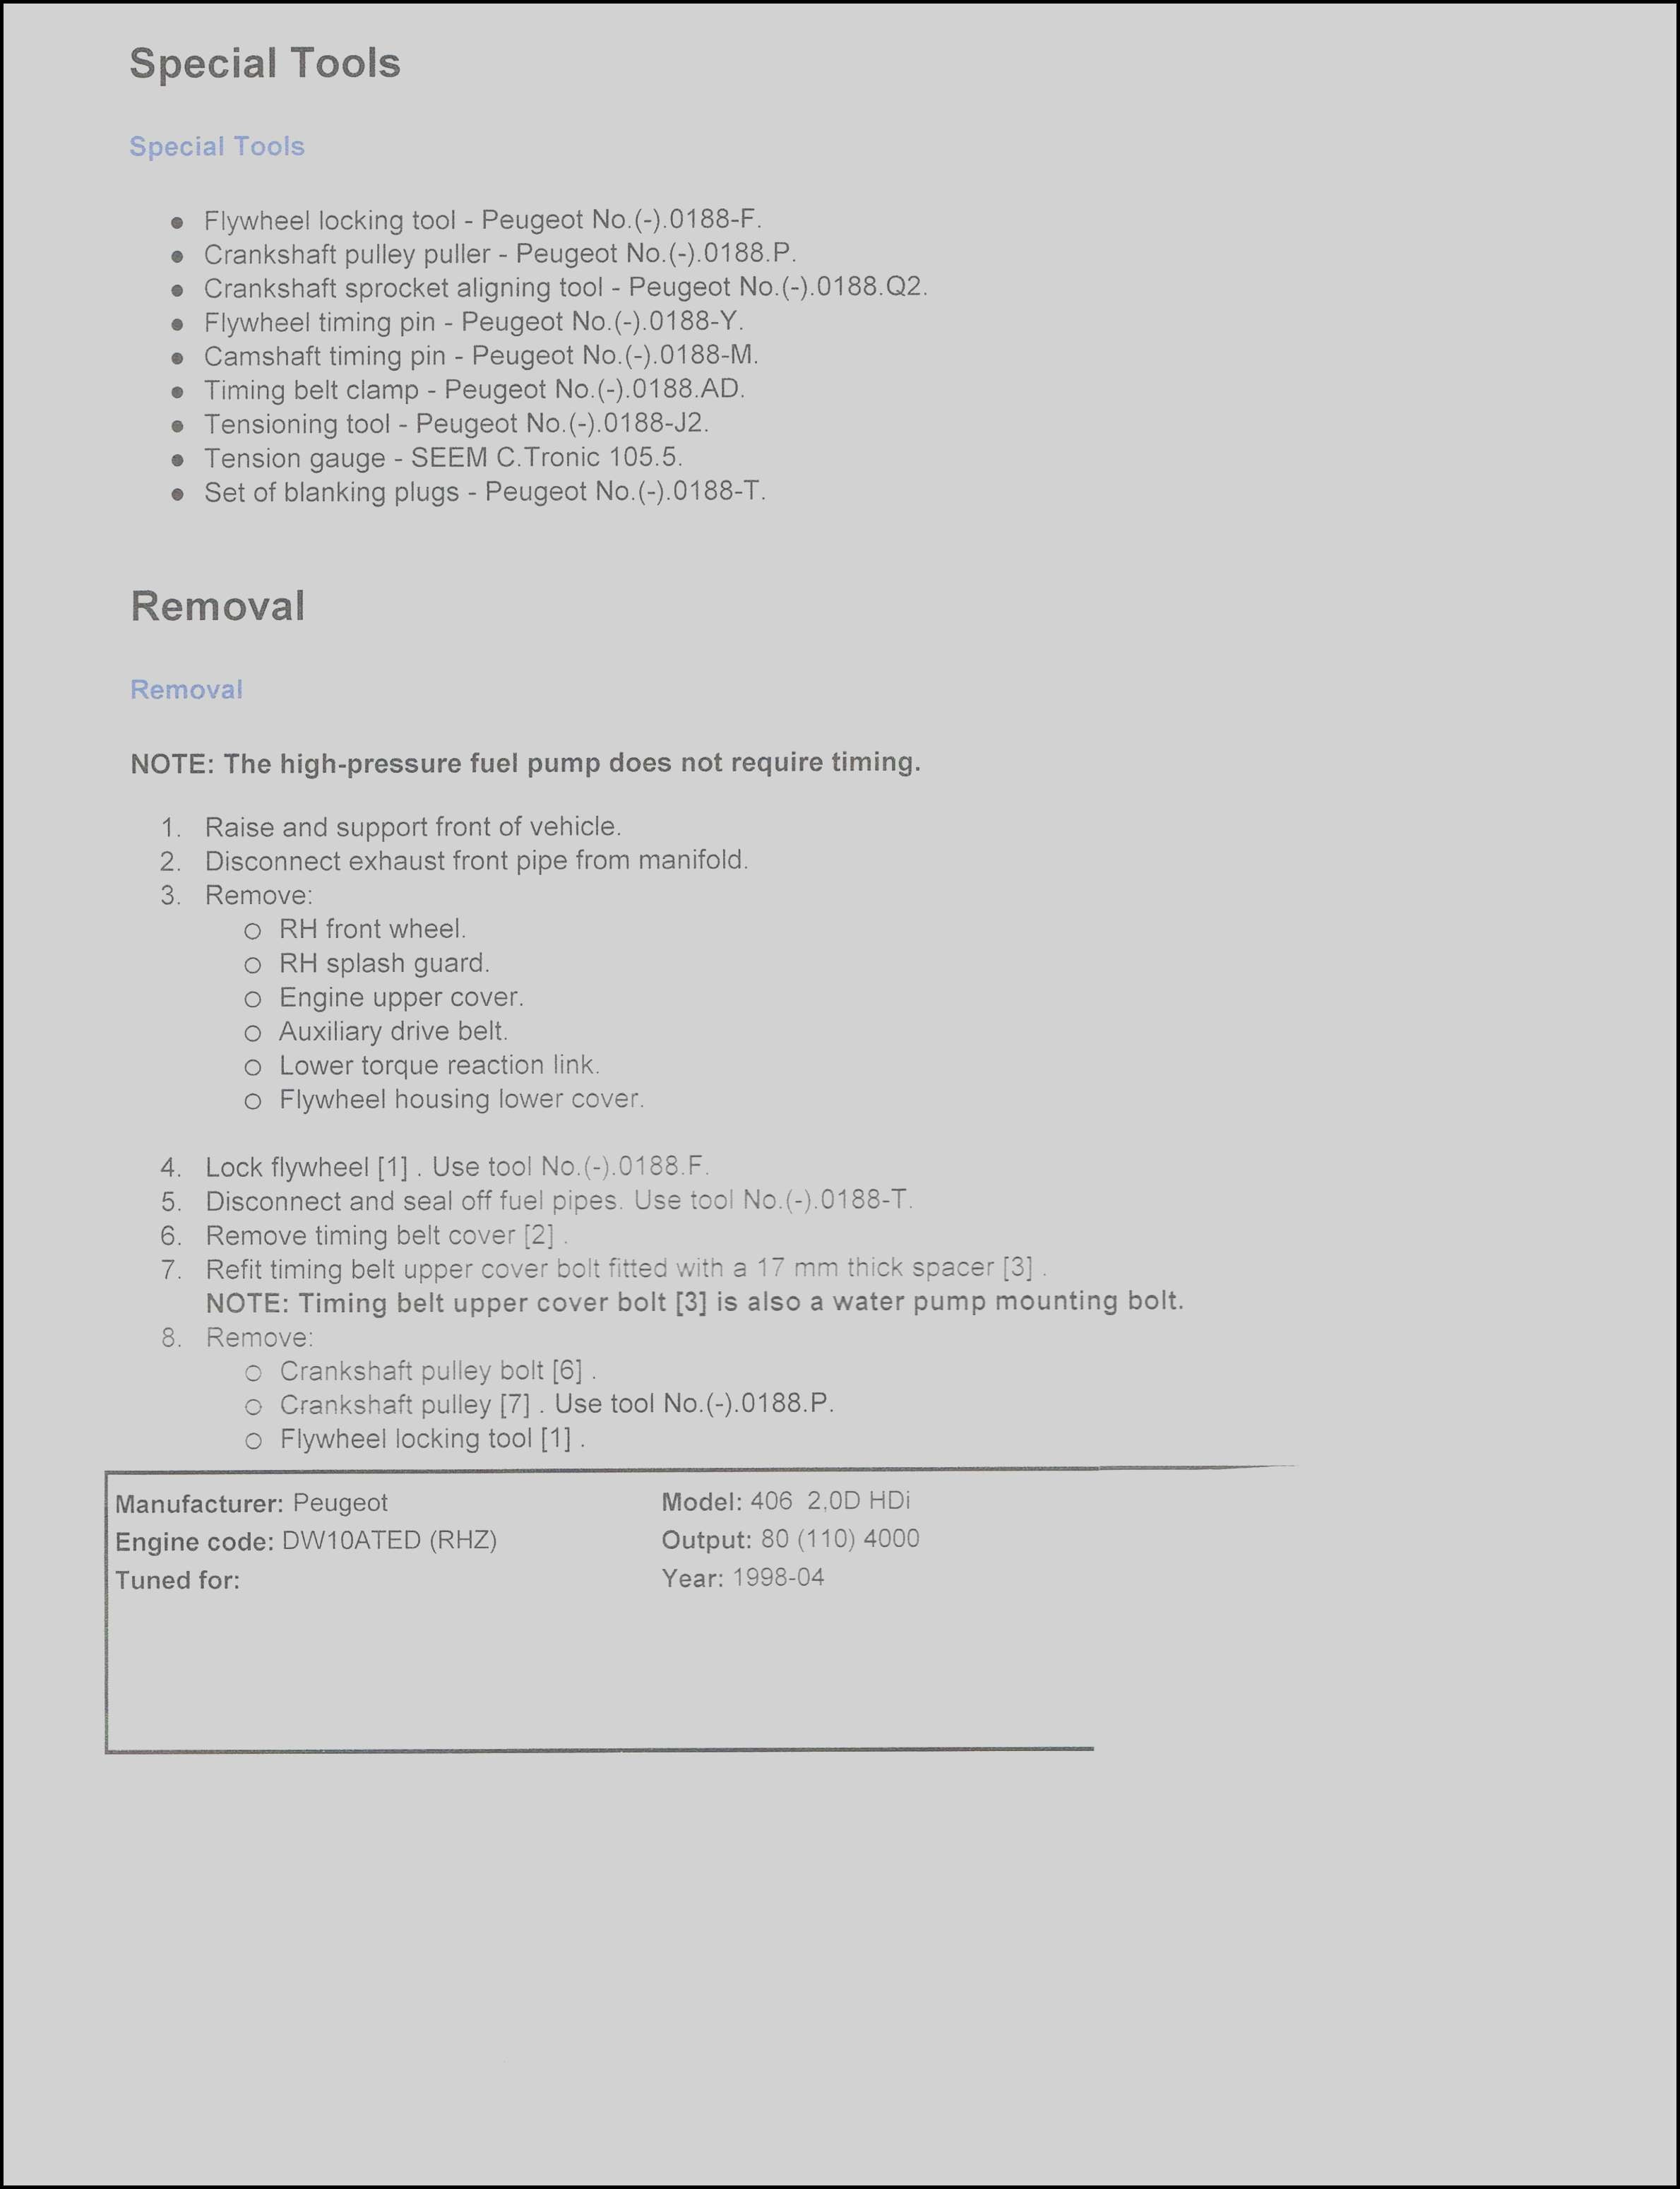 Resume making software free download